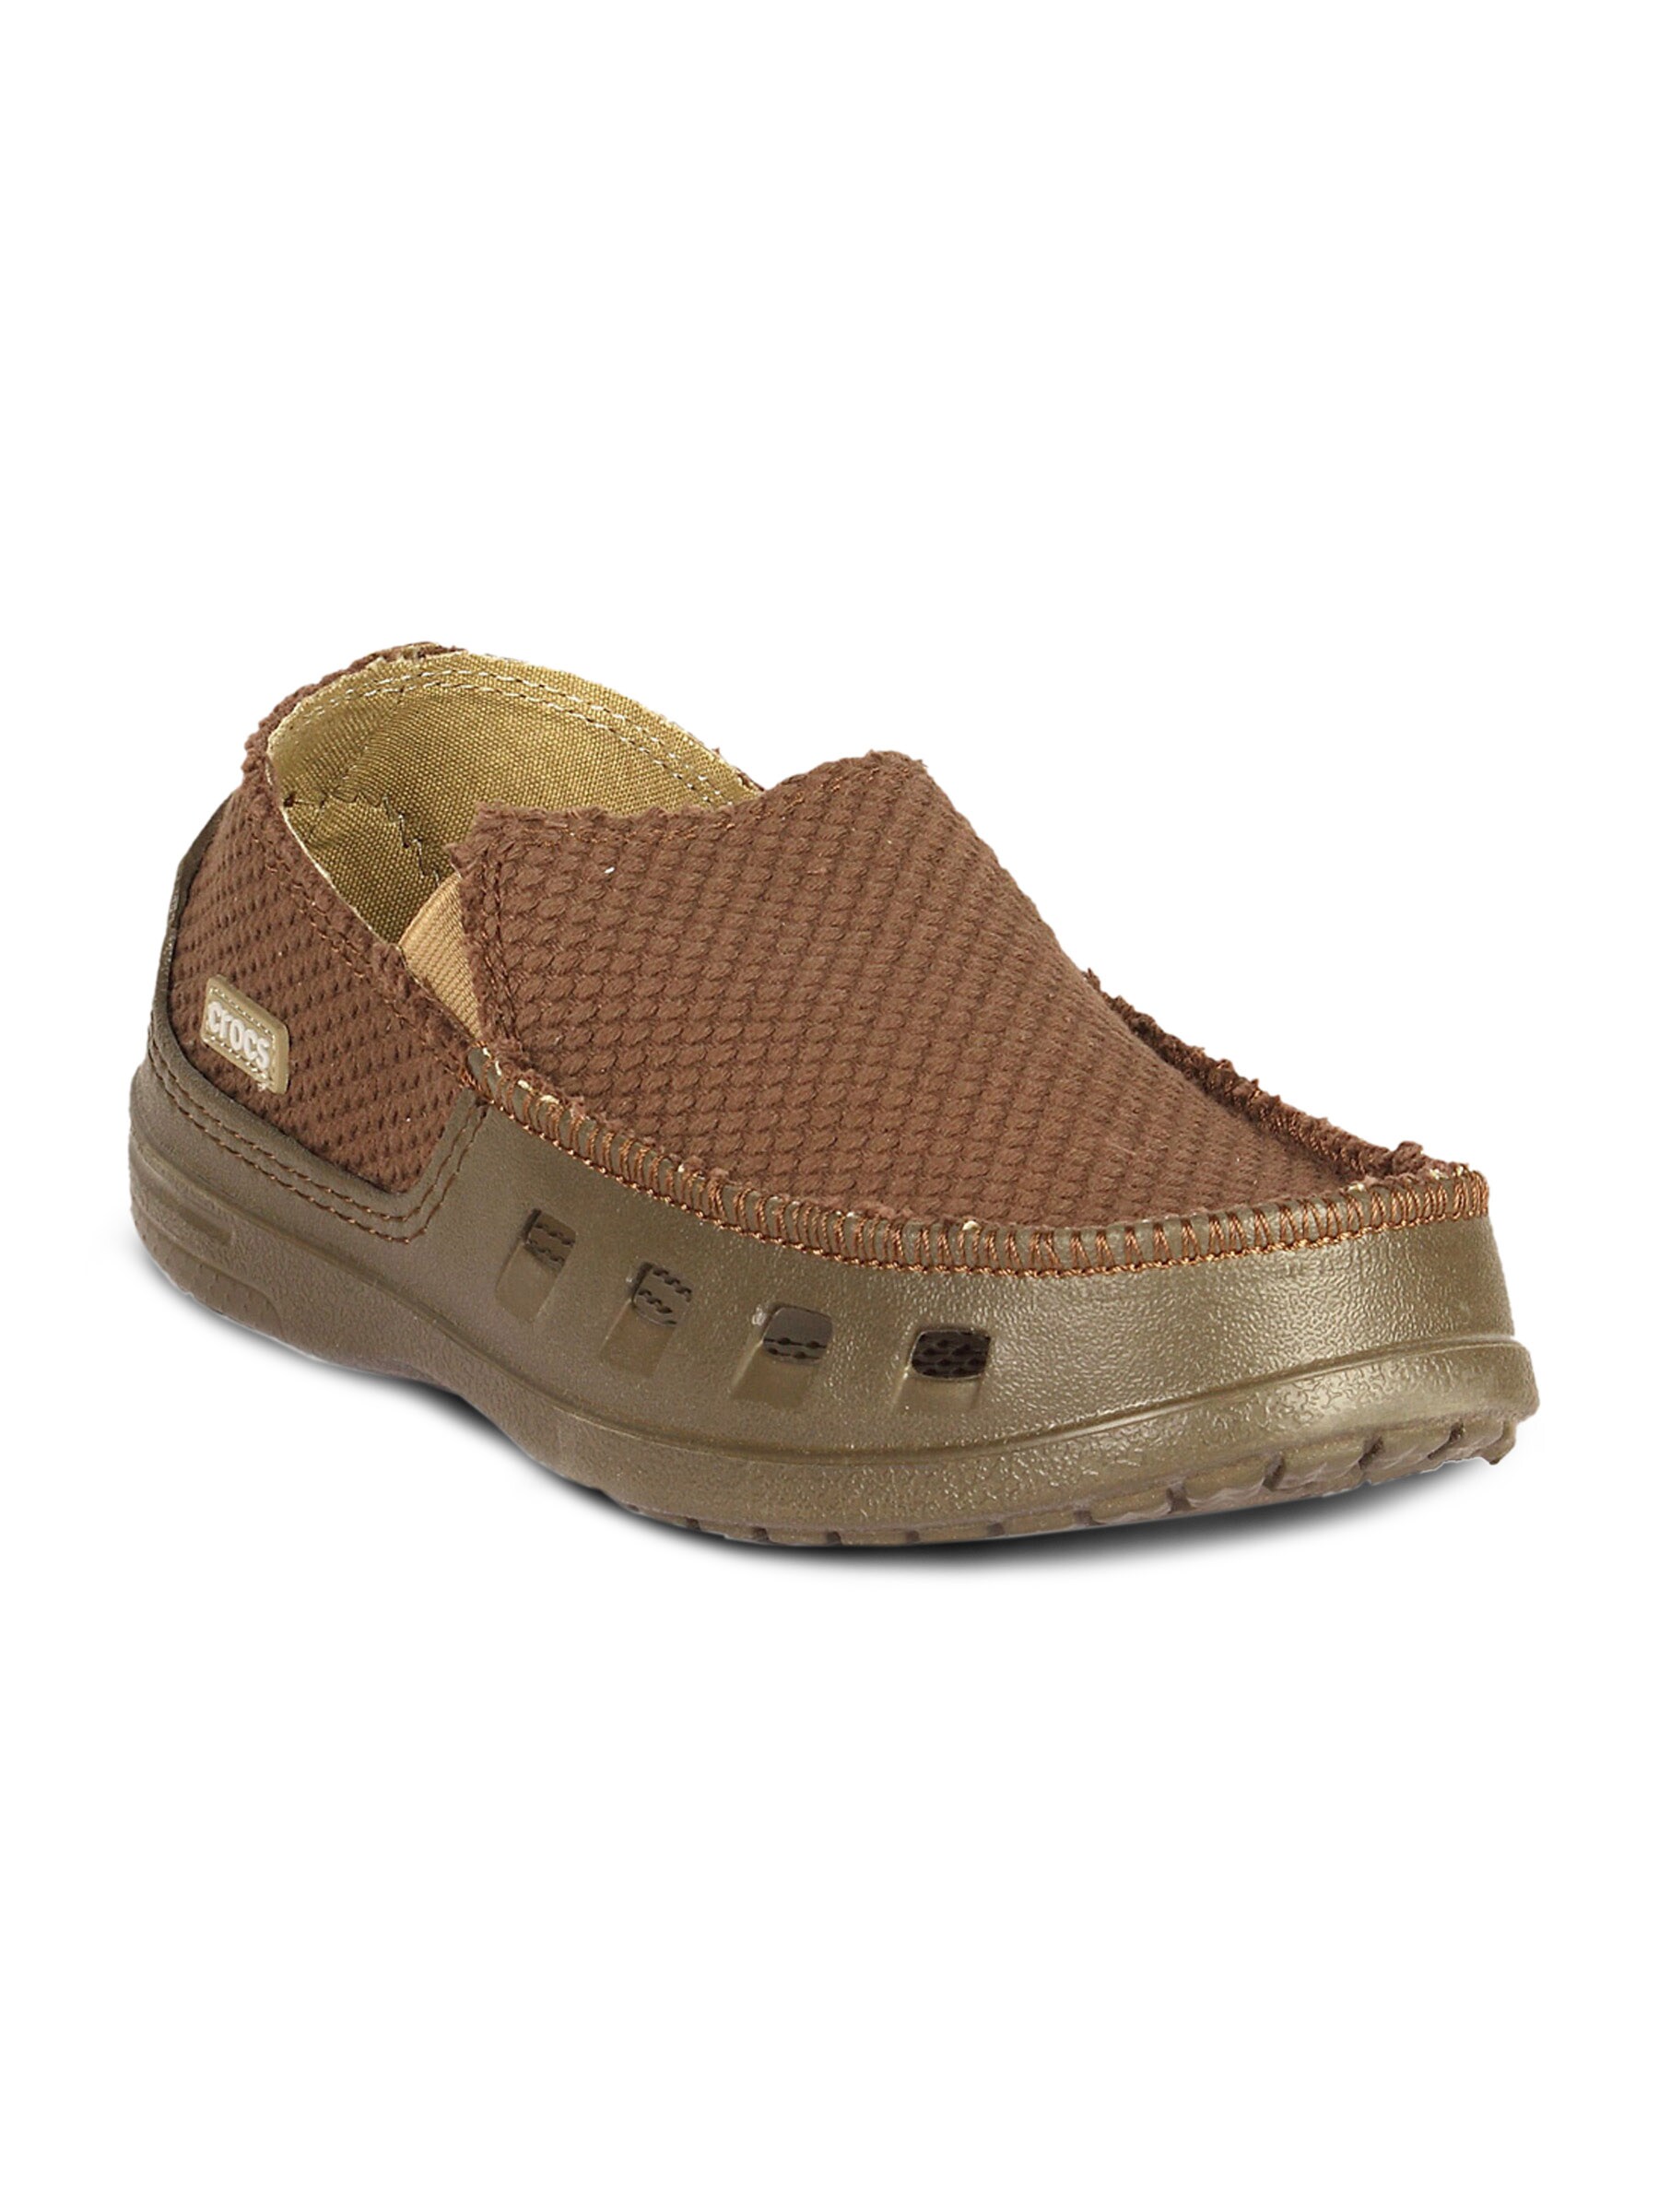 Crocs Men's Tideline Canvas Chocolate Shoe